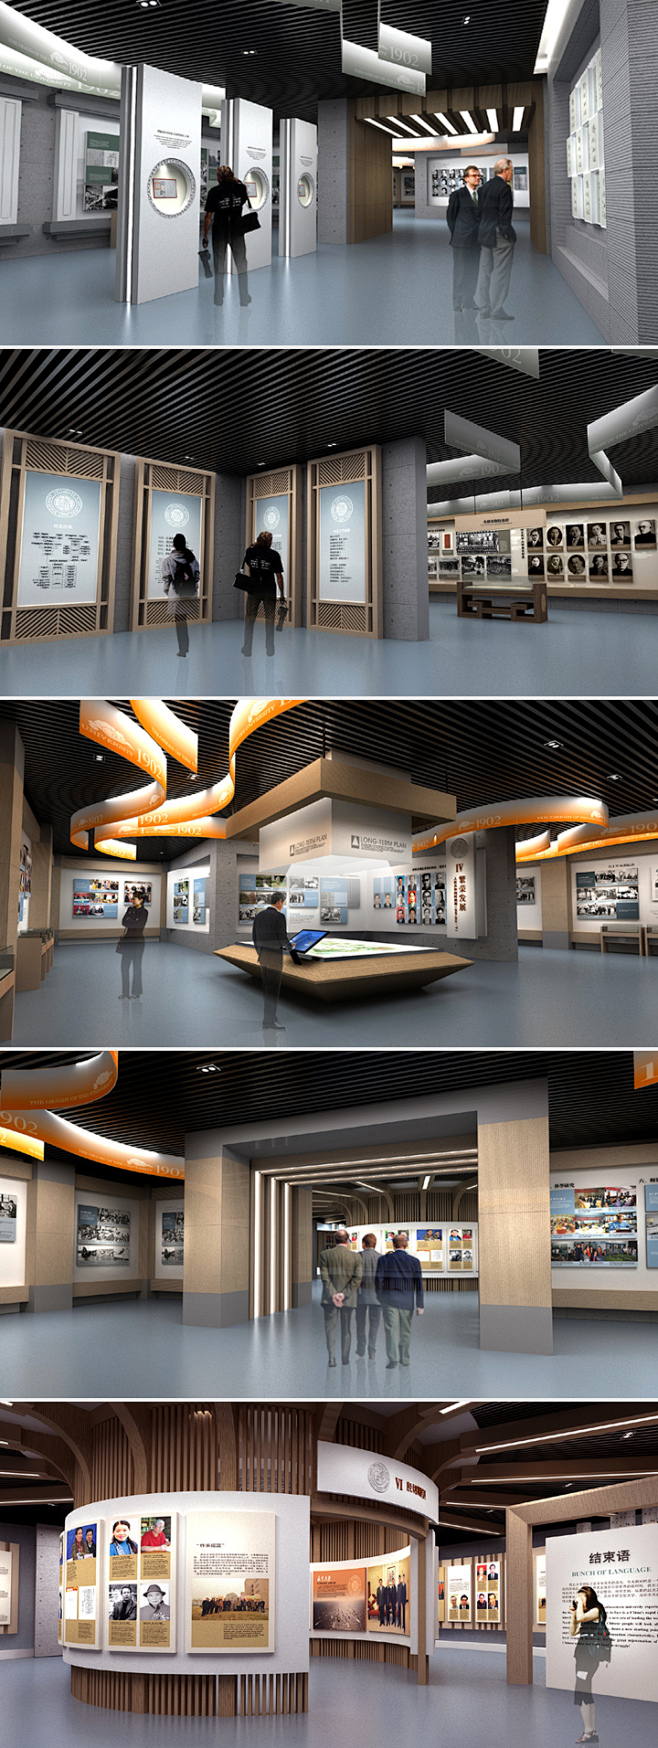 西北大学校史馆 展厅设计效果图 企业文化...